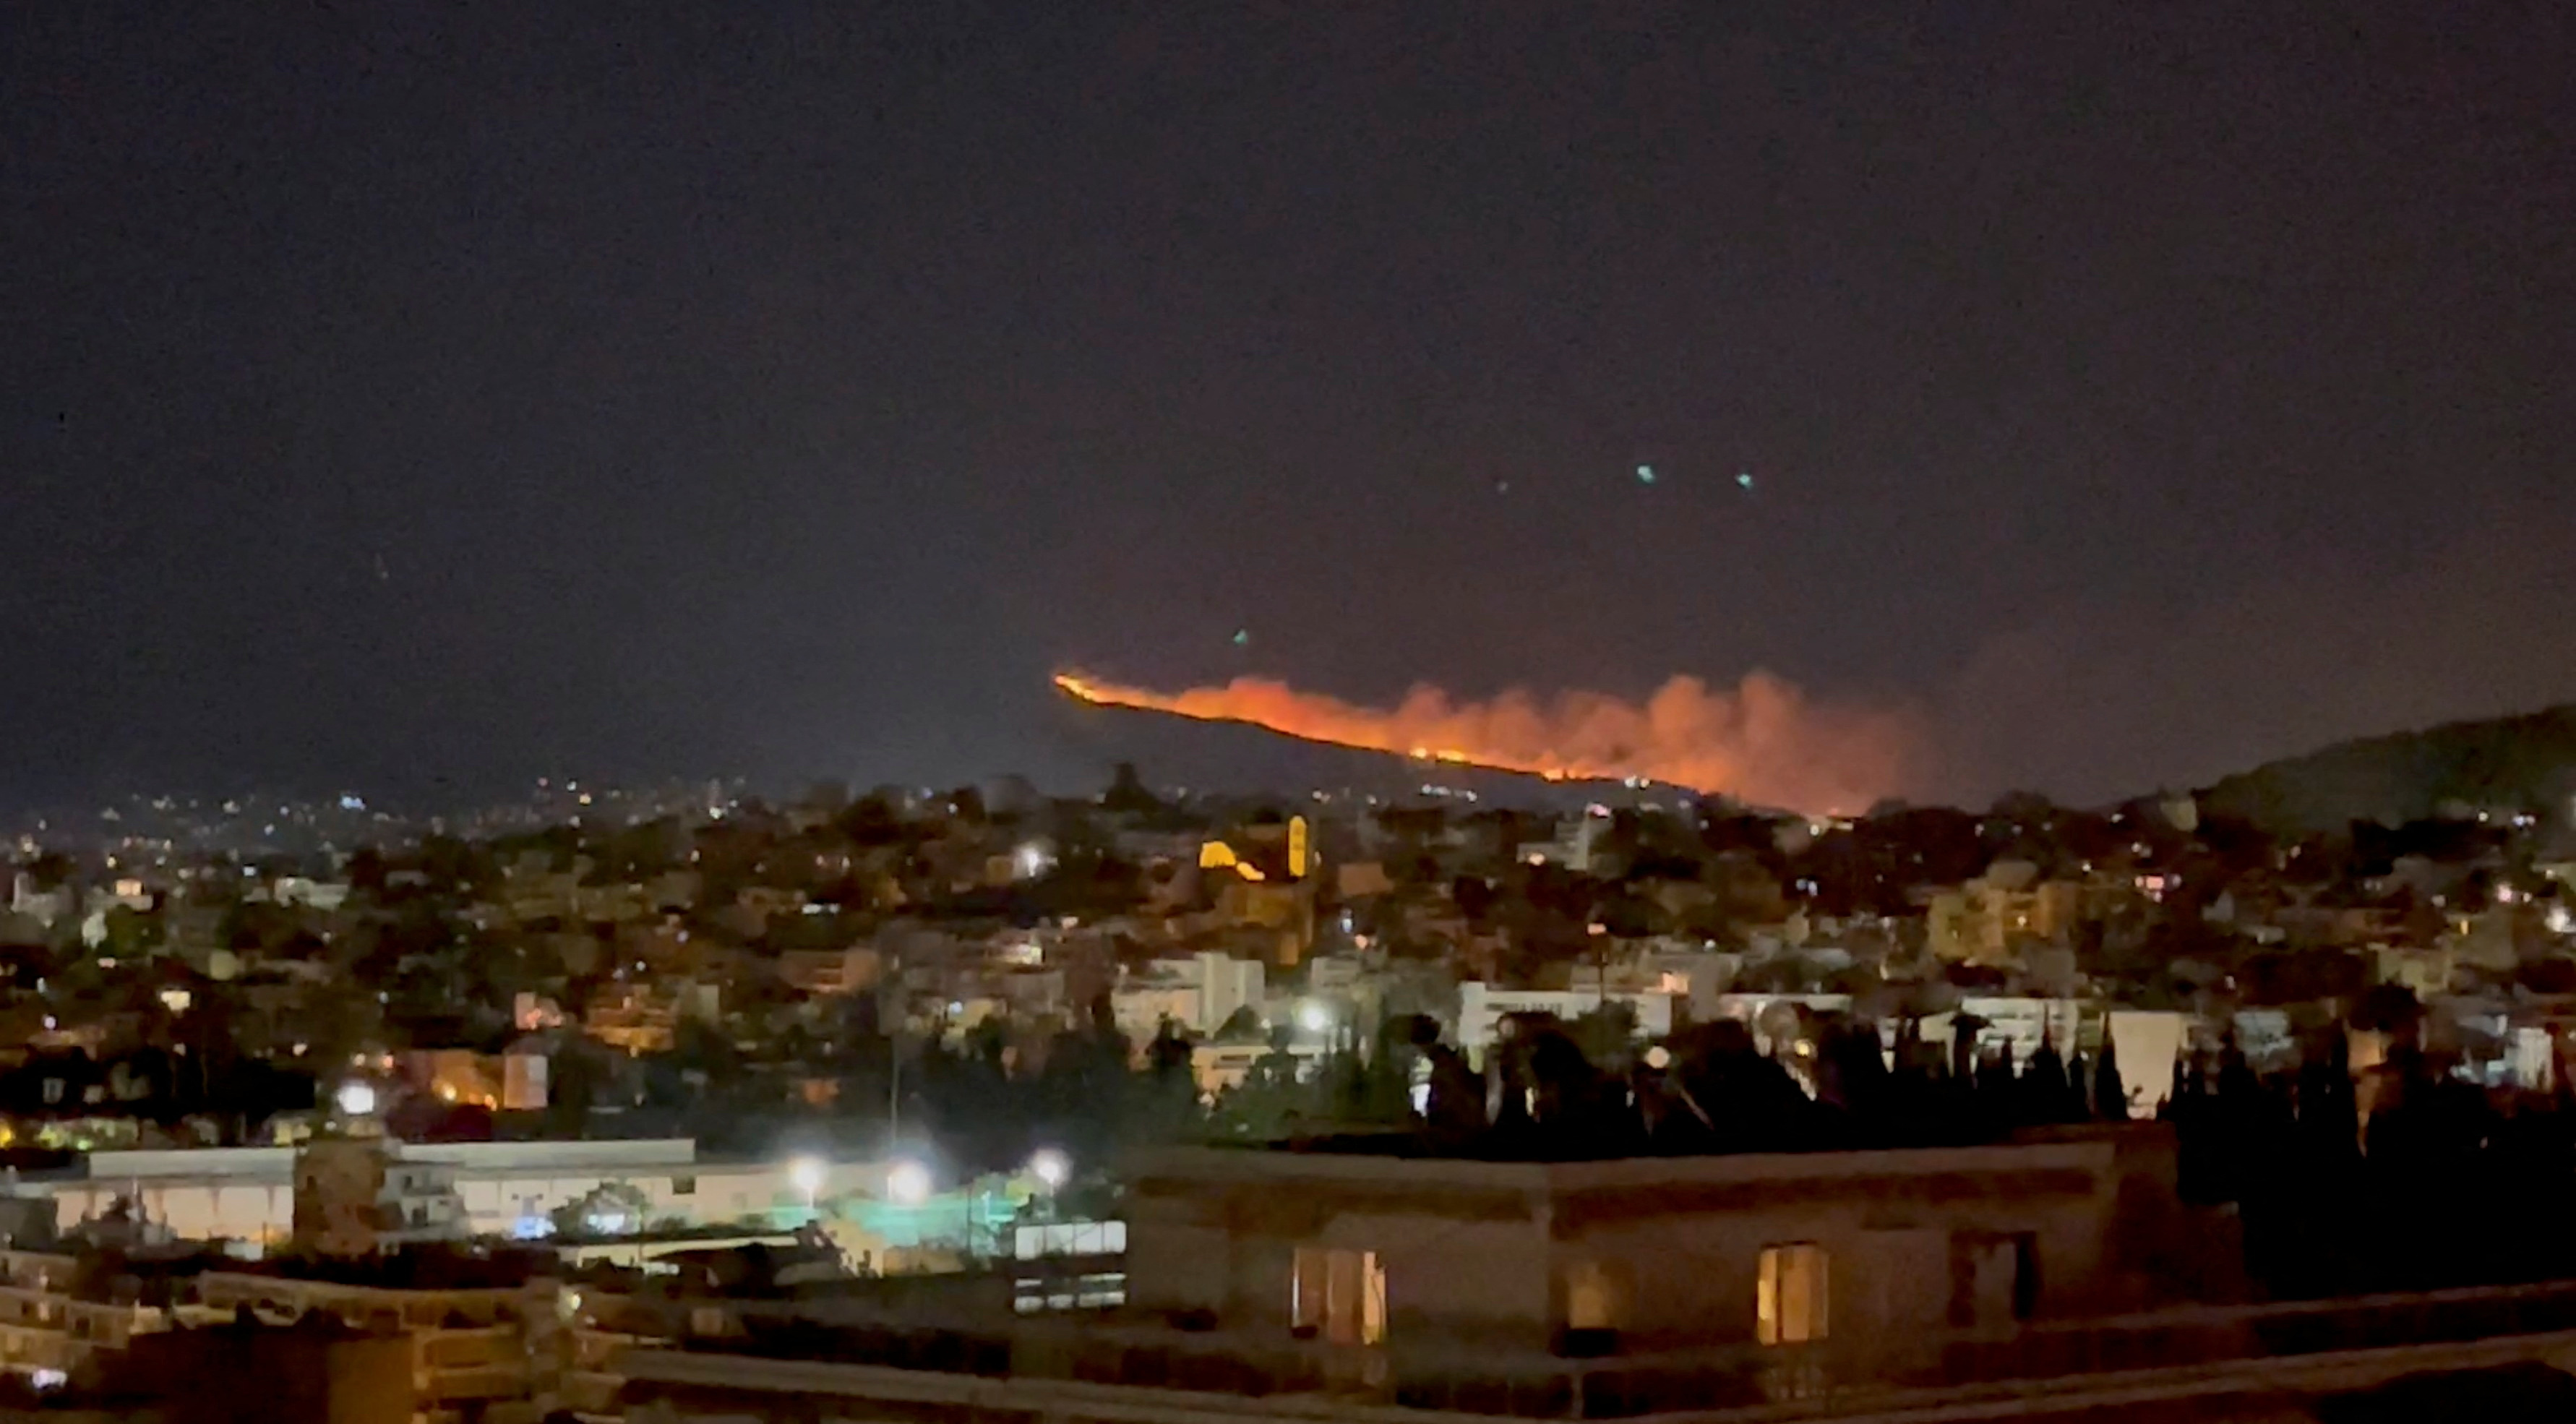 Incendios en las afueras de Atenas, Grecia (Thanasis Gounaris/via REUTERS)